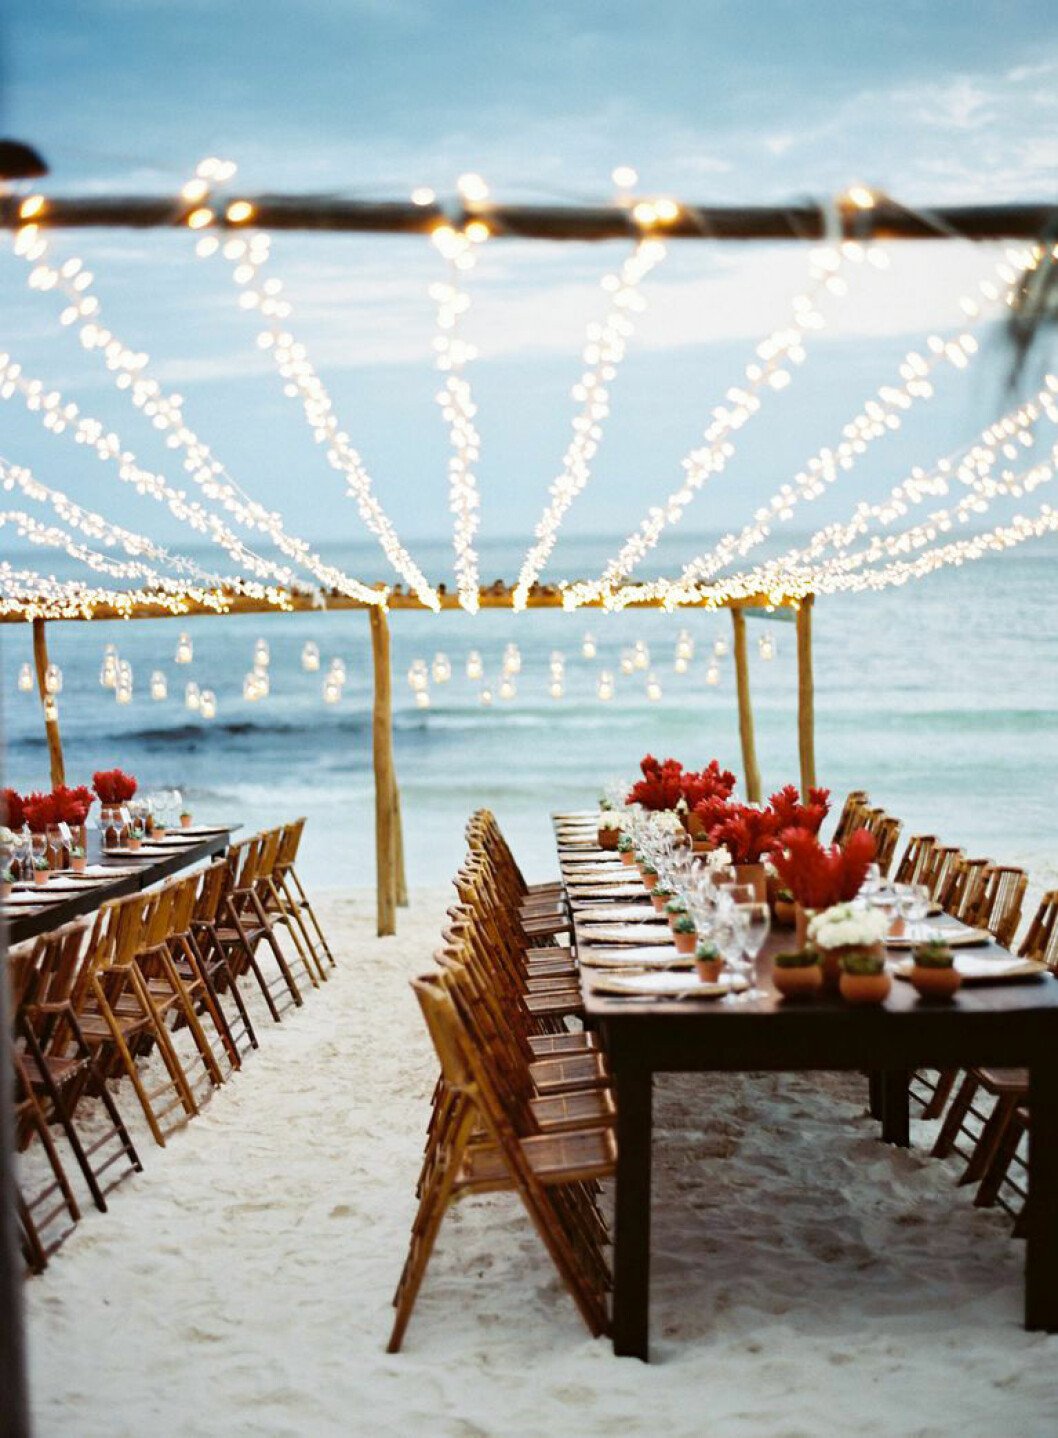 Strandbröllop vid havet, ljus sand och ljusslingor.